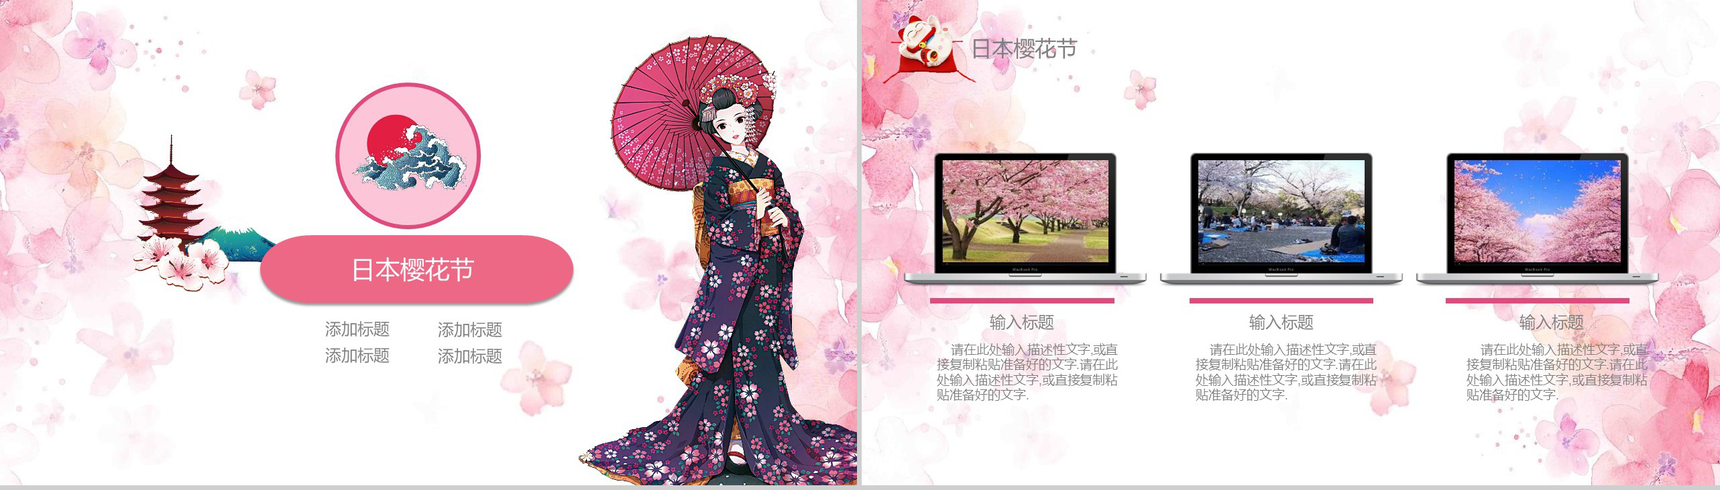 粉色日系和风日本文化介绍PPT模板-12